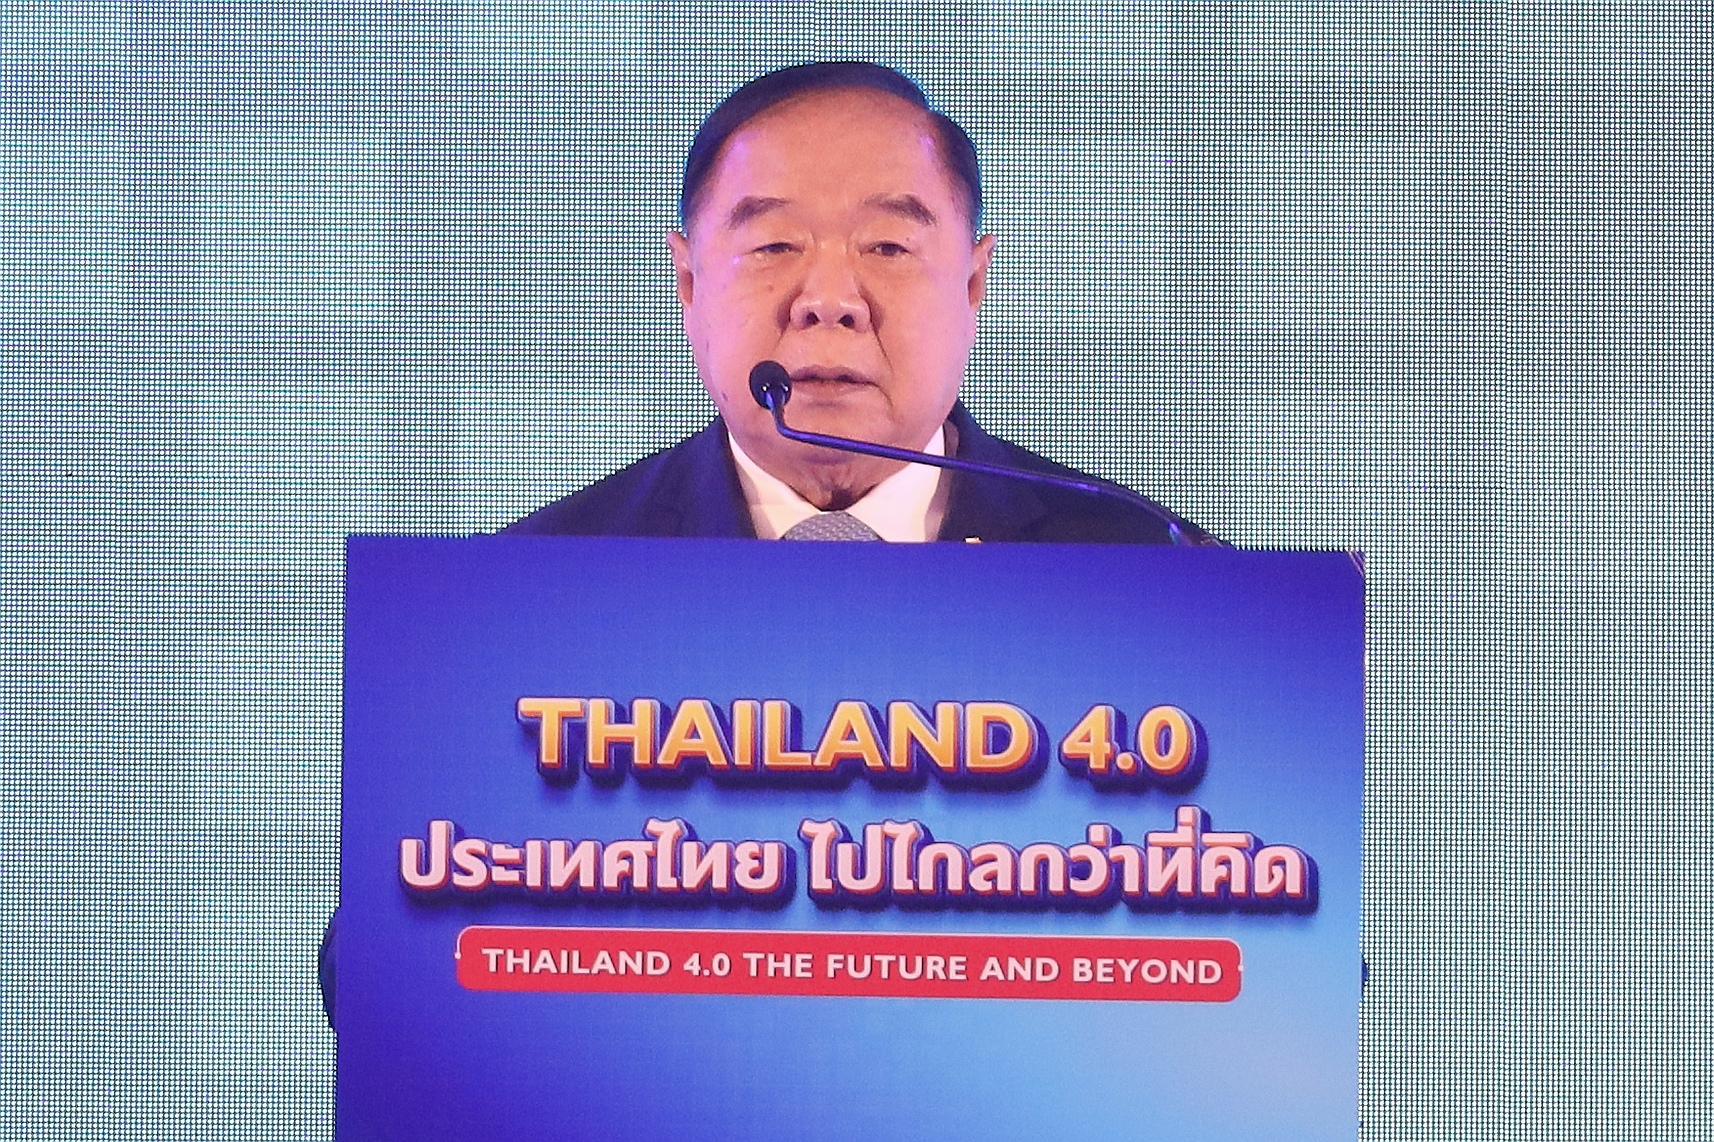 ประวิตร เปิดท่อเศรษฐกิจดิจิทัล ดันไทยแลนด์ 4.0